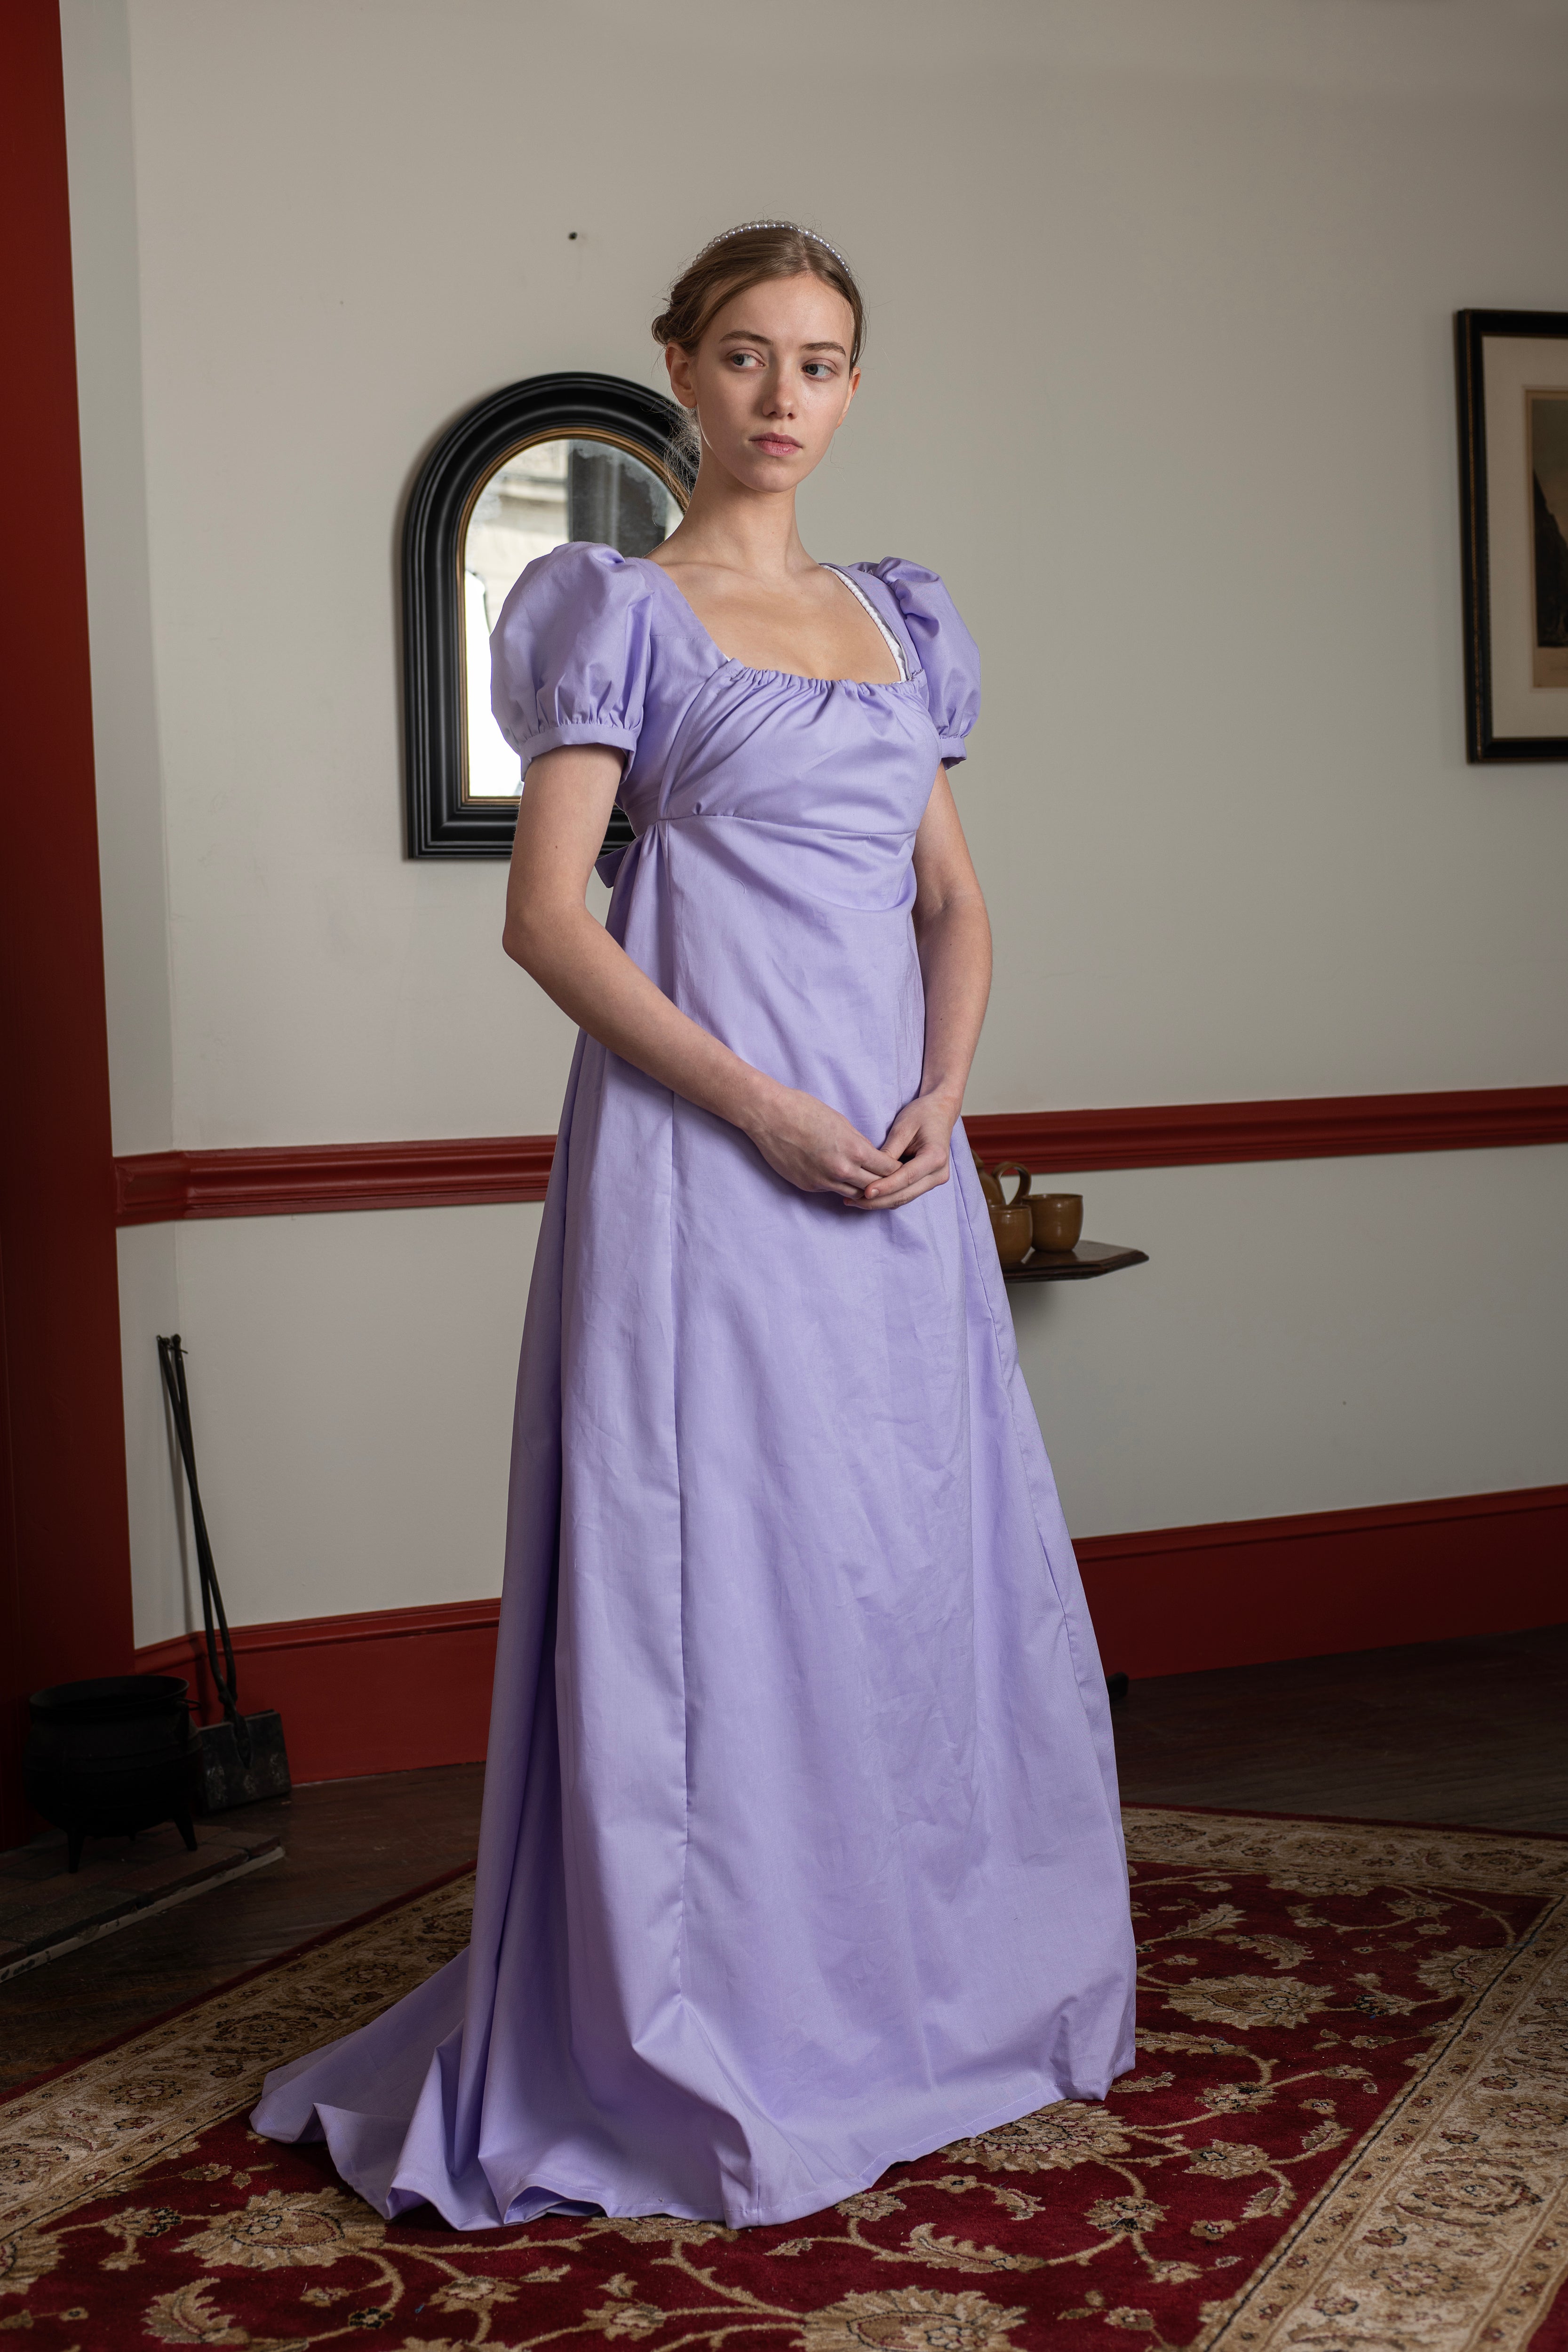 regency dress